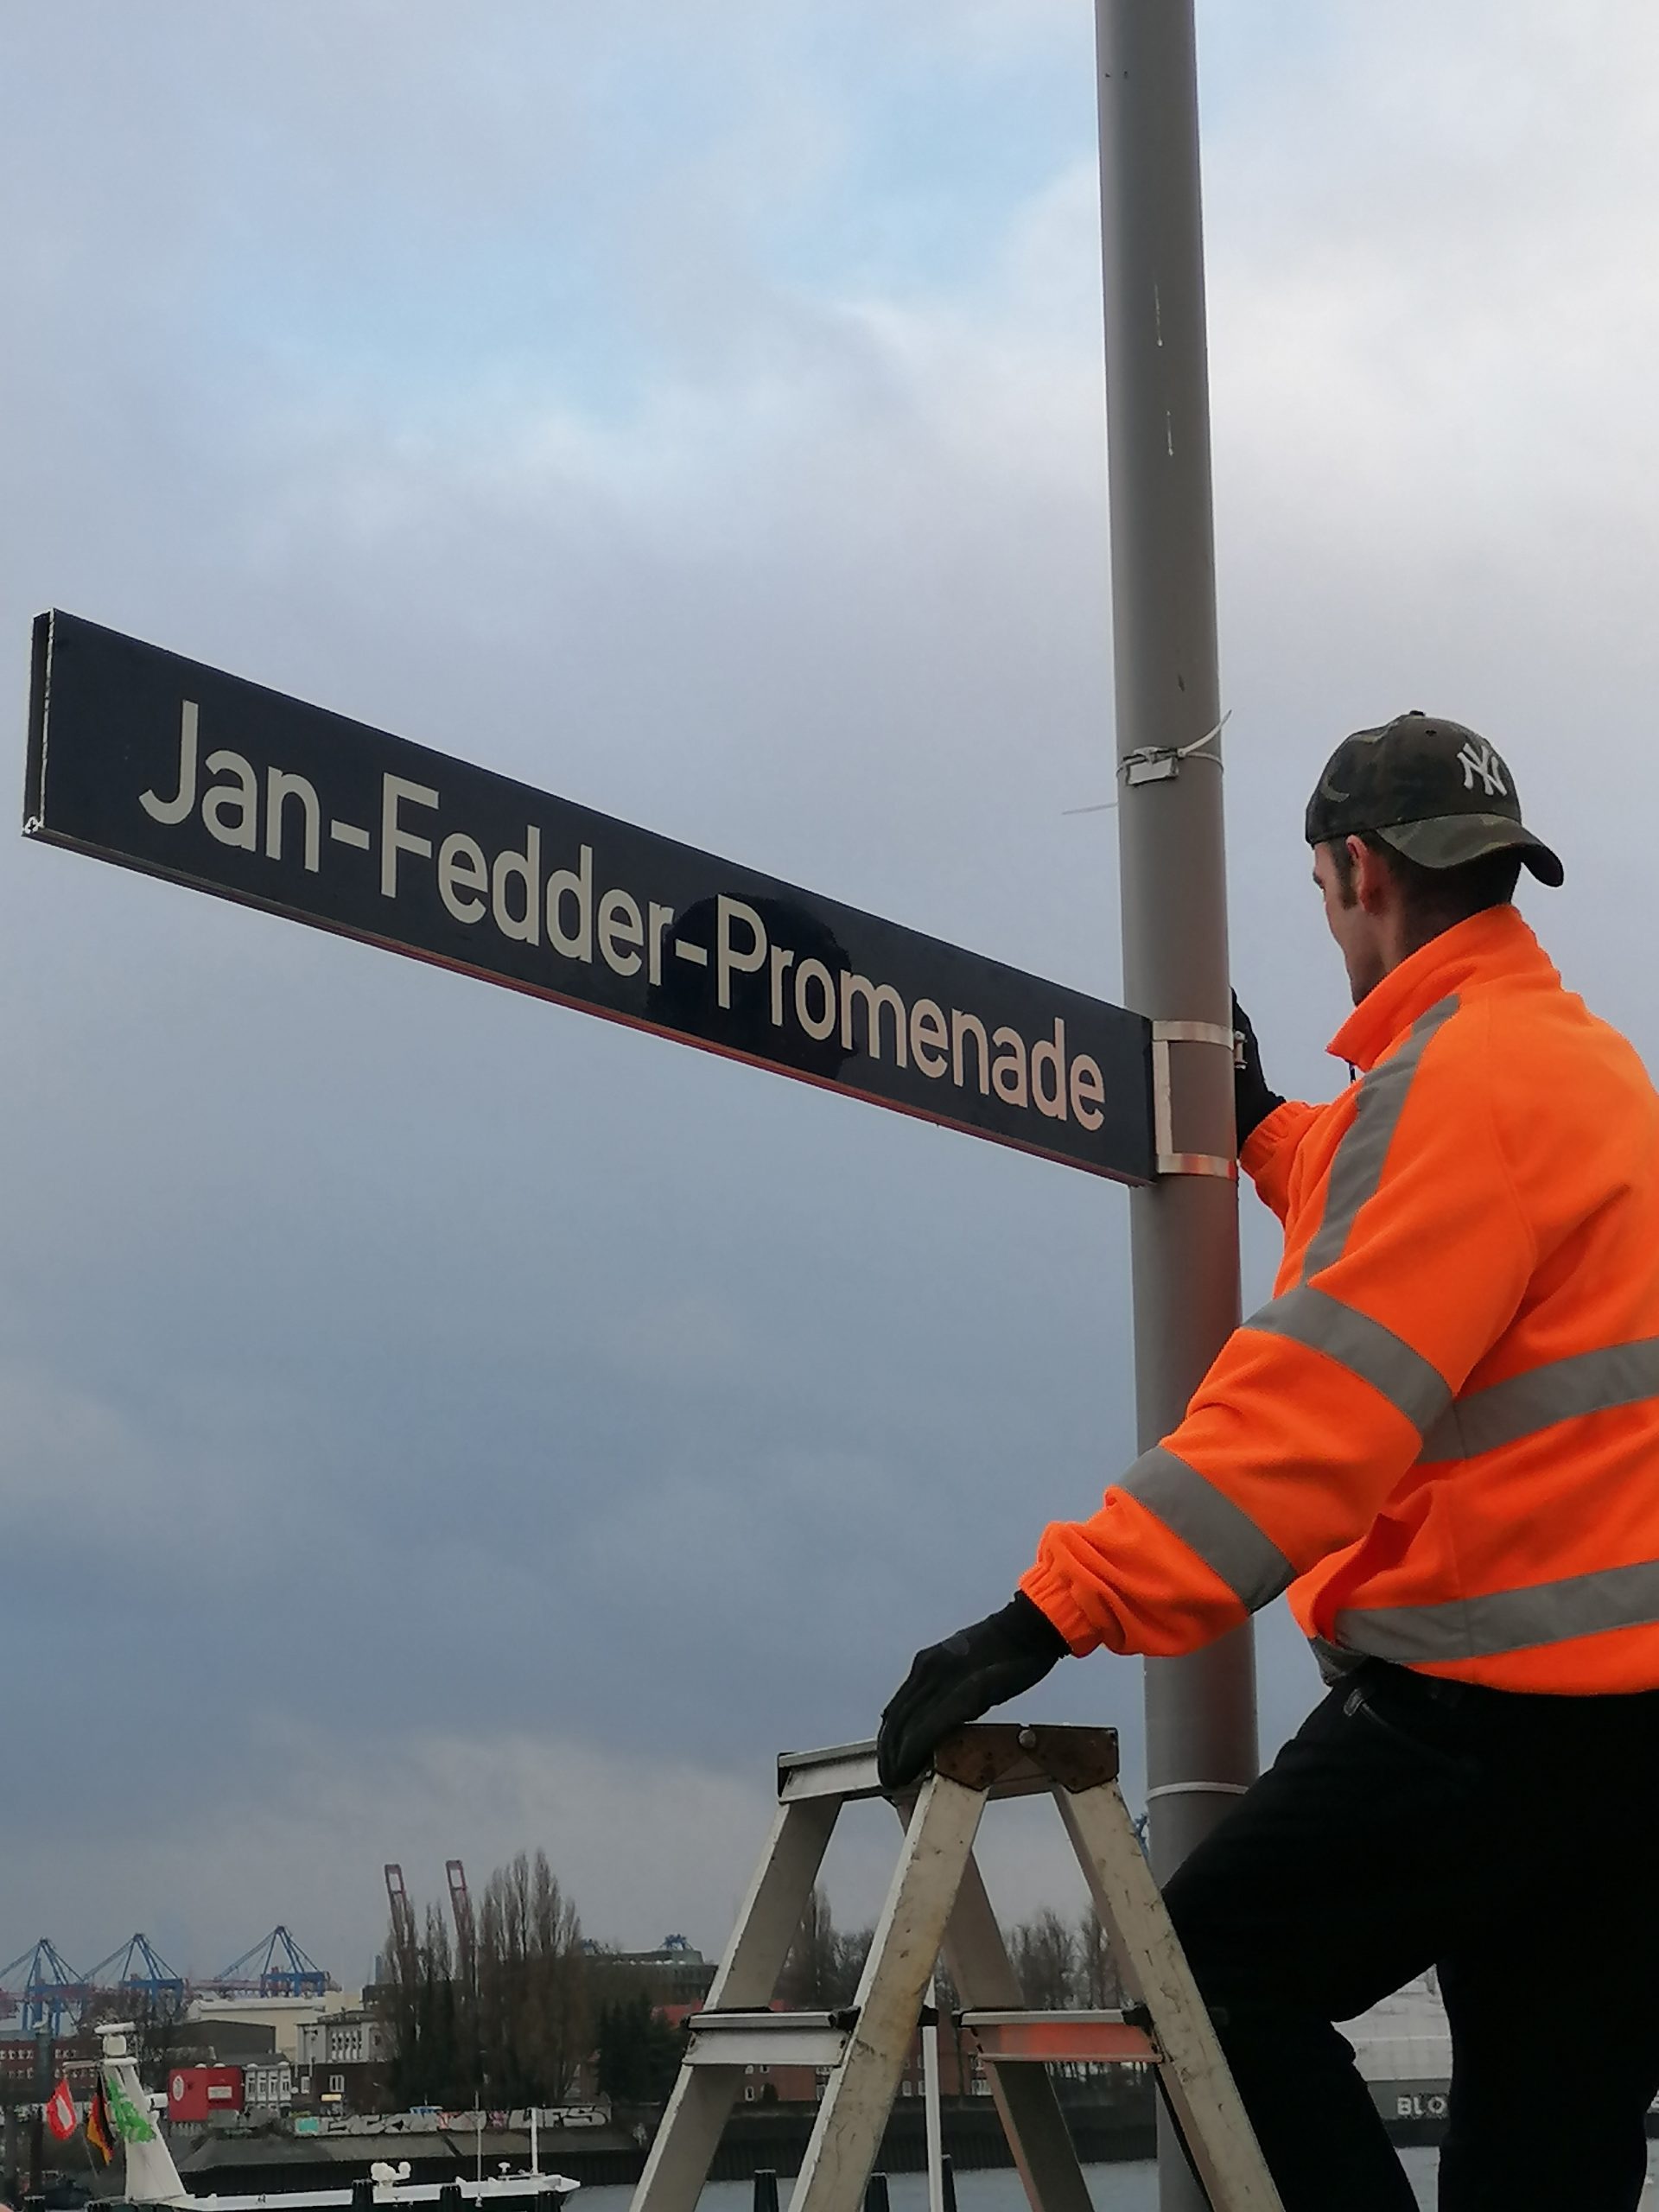 Arbeiter des Bezirksamts Mitte bringen die Schilder für die Jan-Fedder-Promenade in Hamburg an.